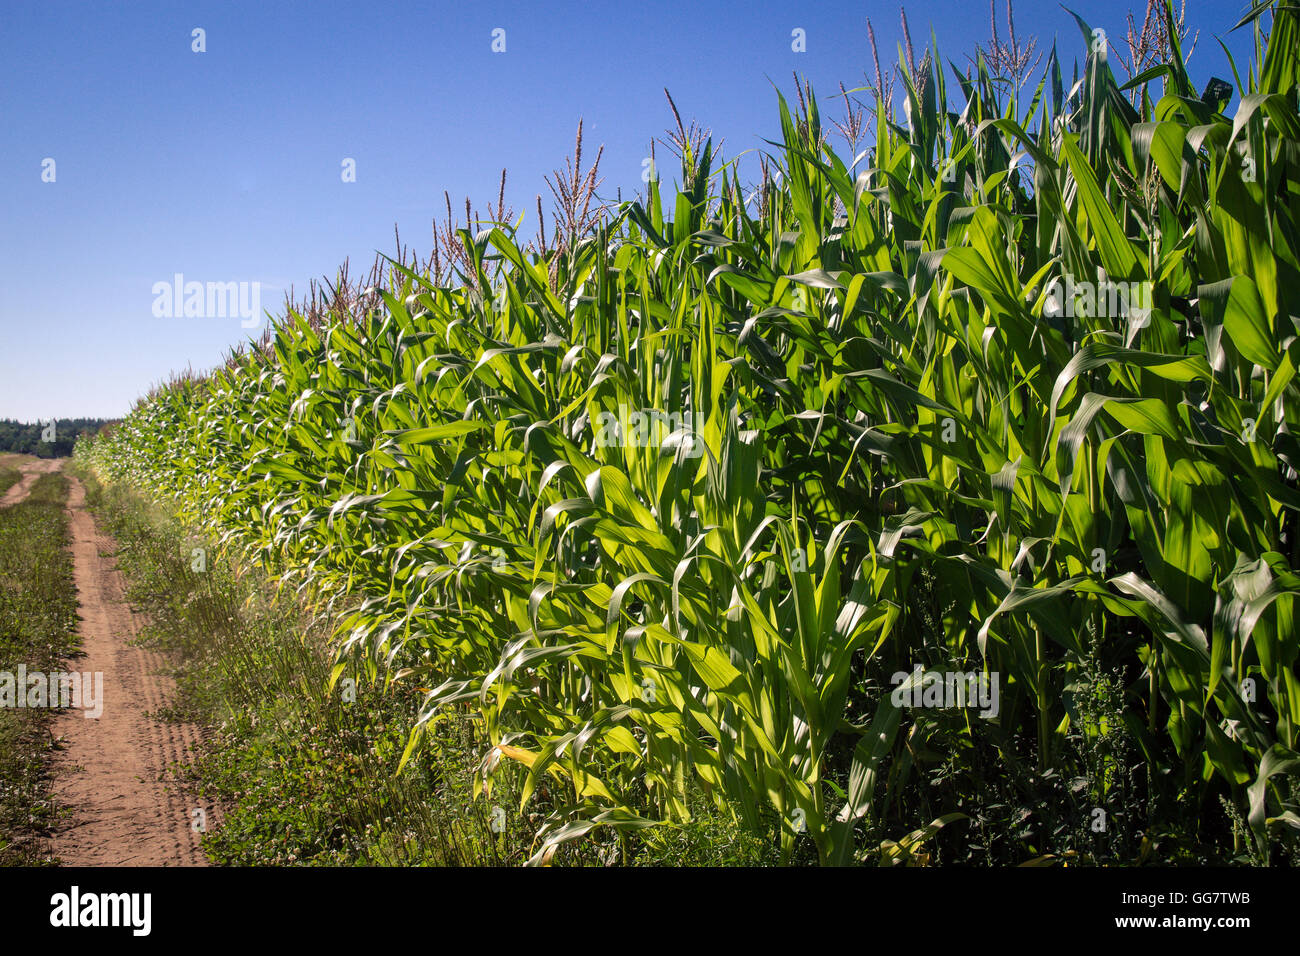 corn field at sunlight Stock Photo